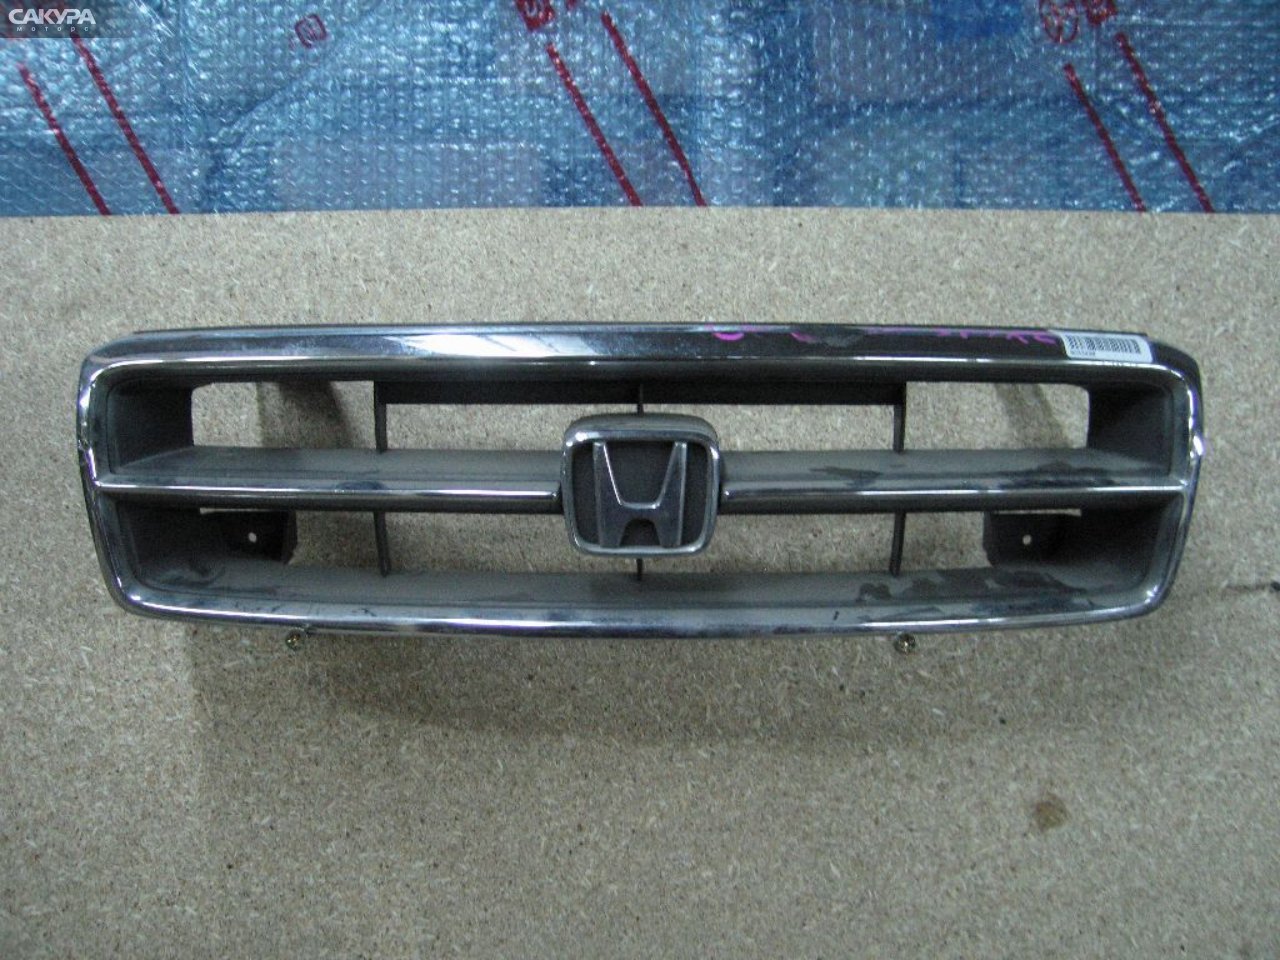 Решетка радиатора Honda Inspire CC2: купить в Сакура Абакан.